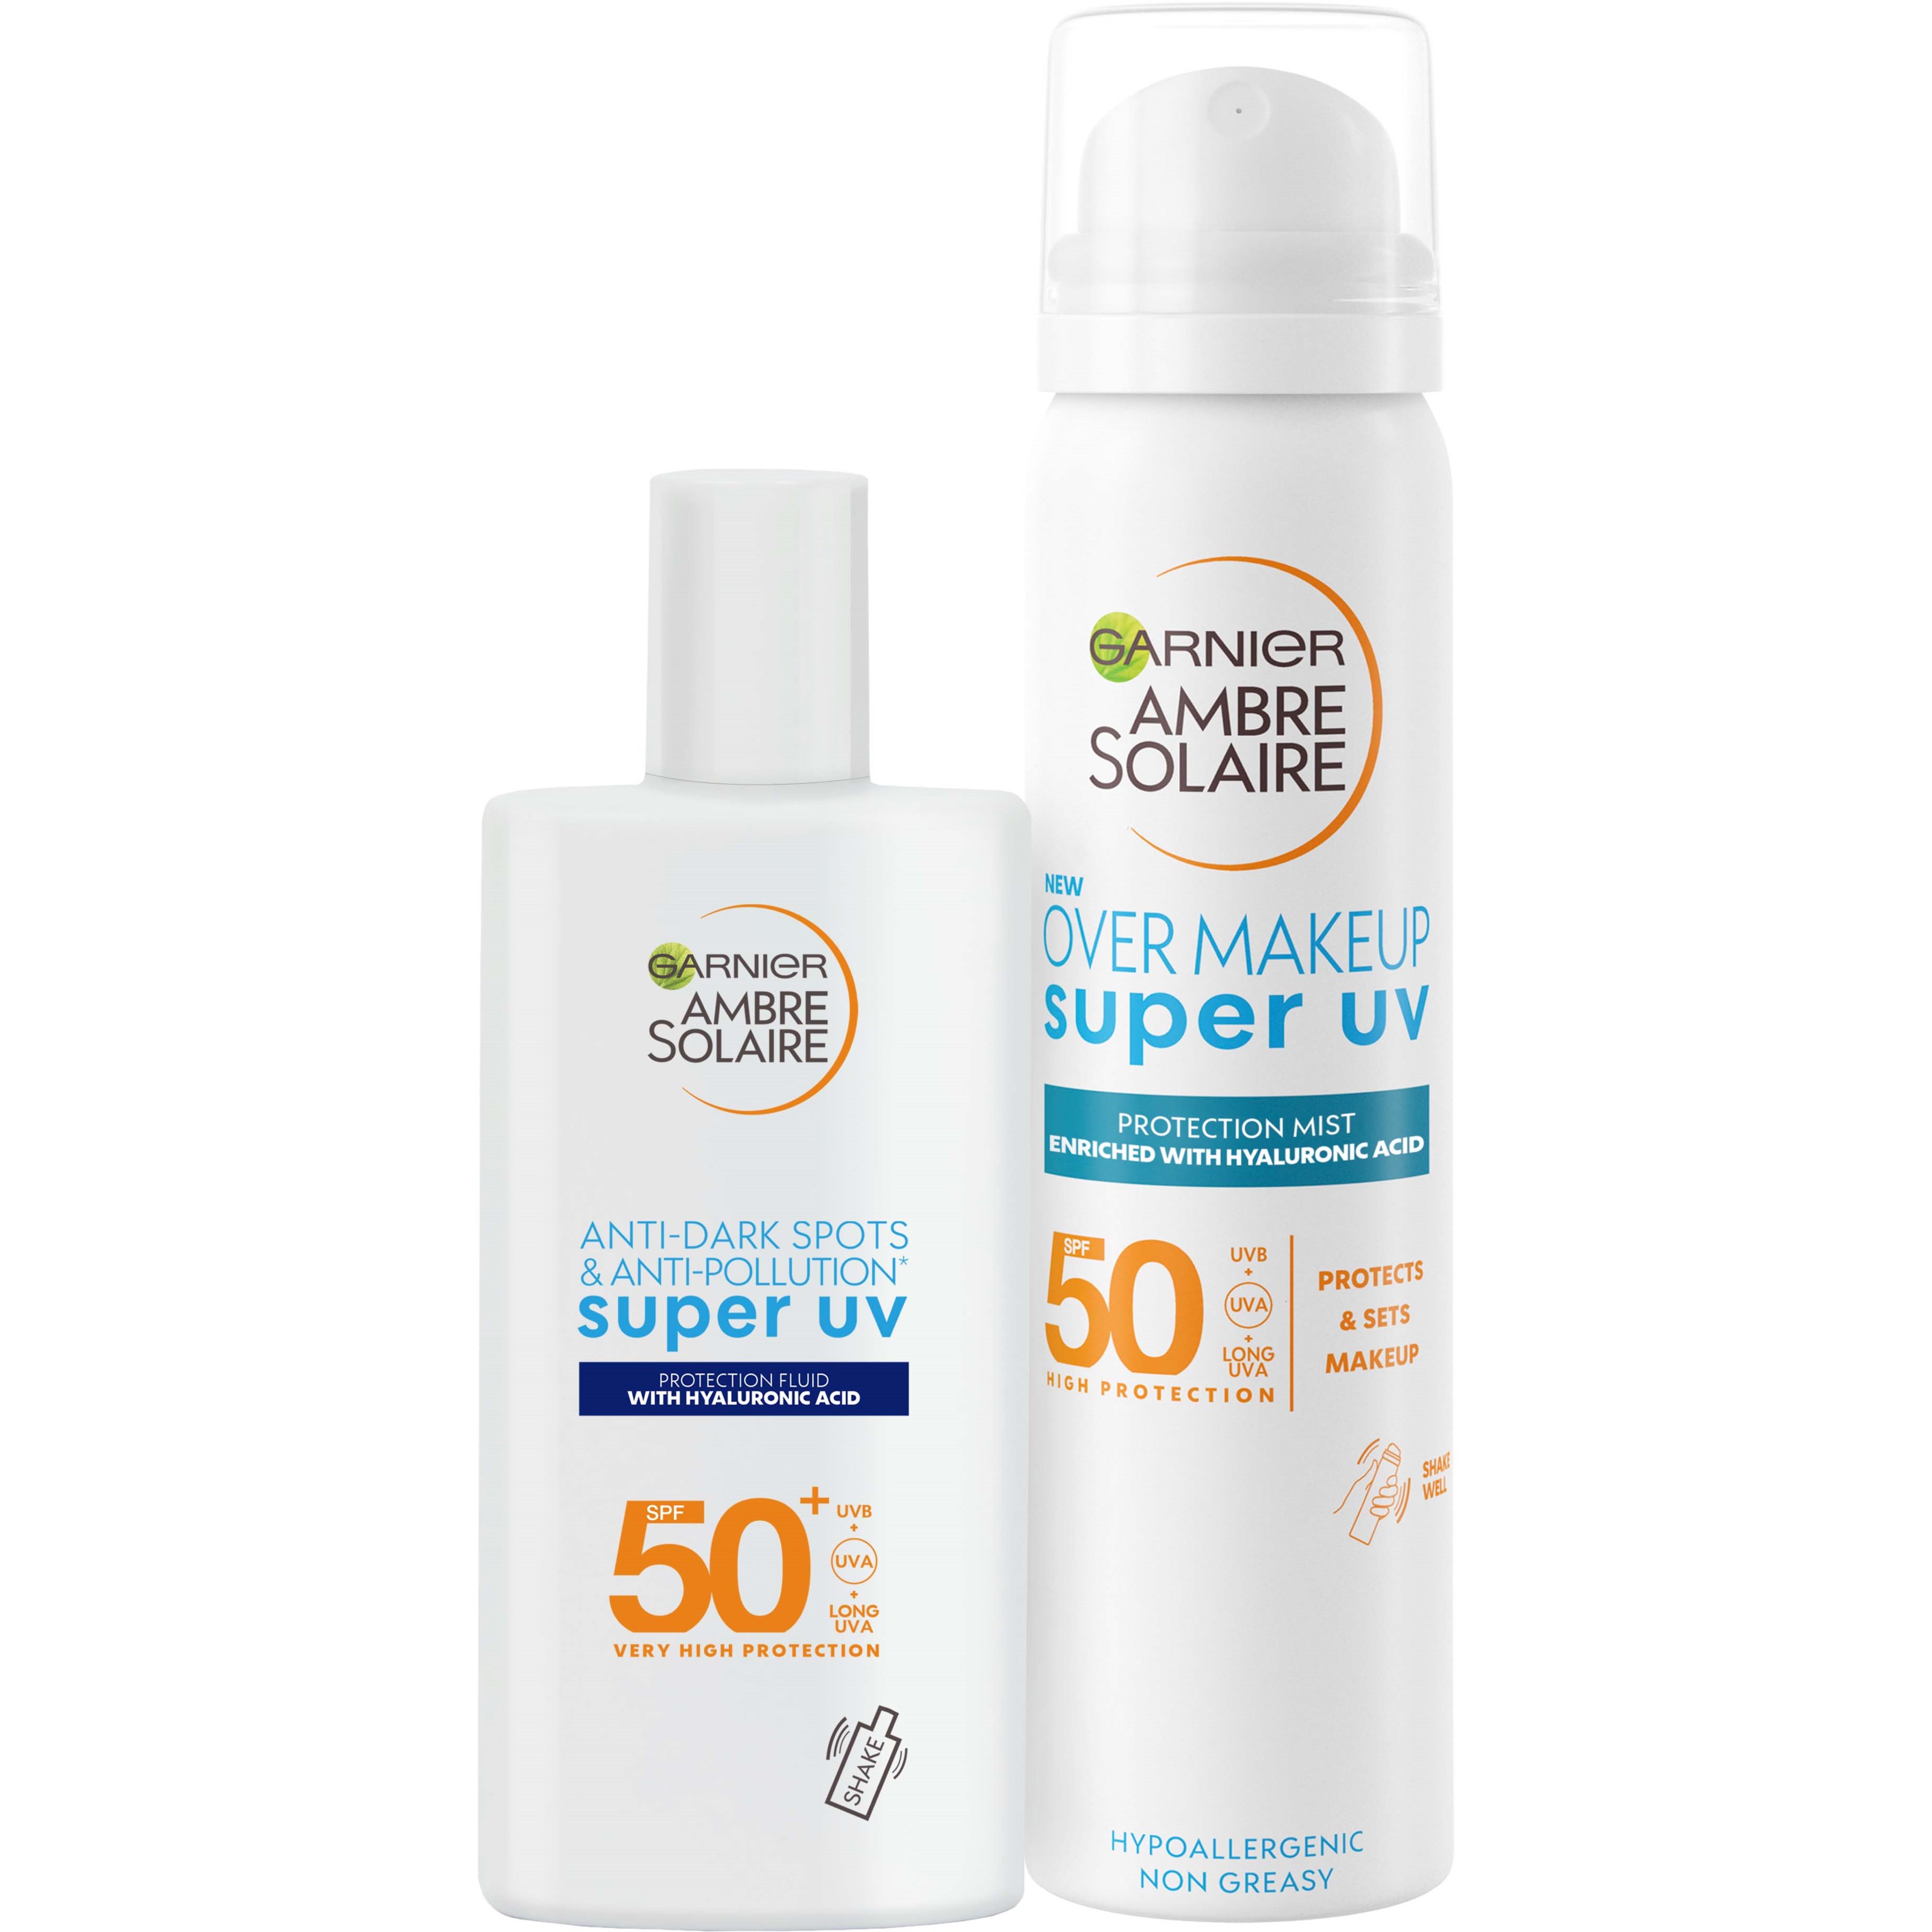 Garnier Ambre Solaire Super UV Duo - Over Makeup Mist + Anti-Dark Spot